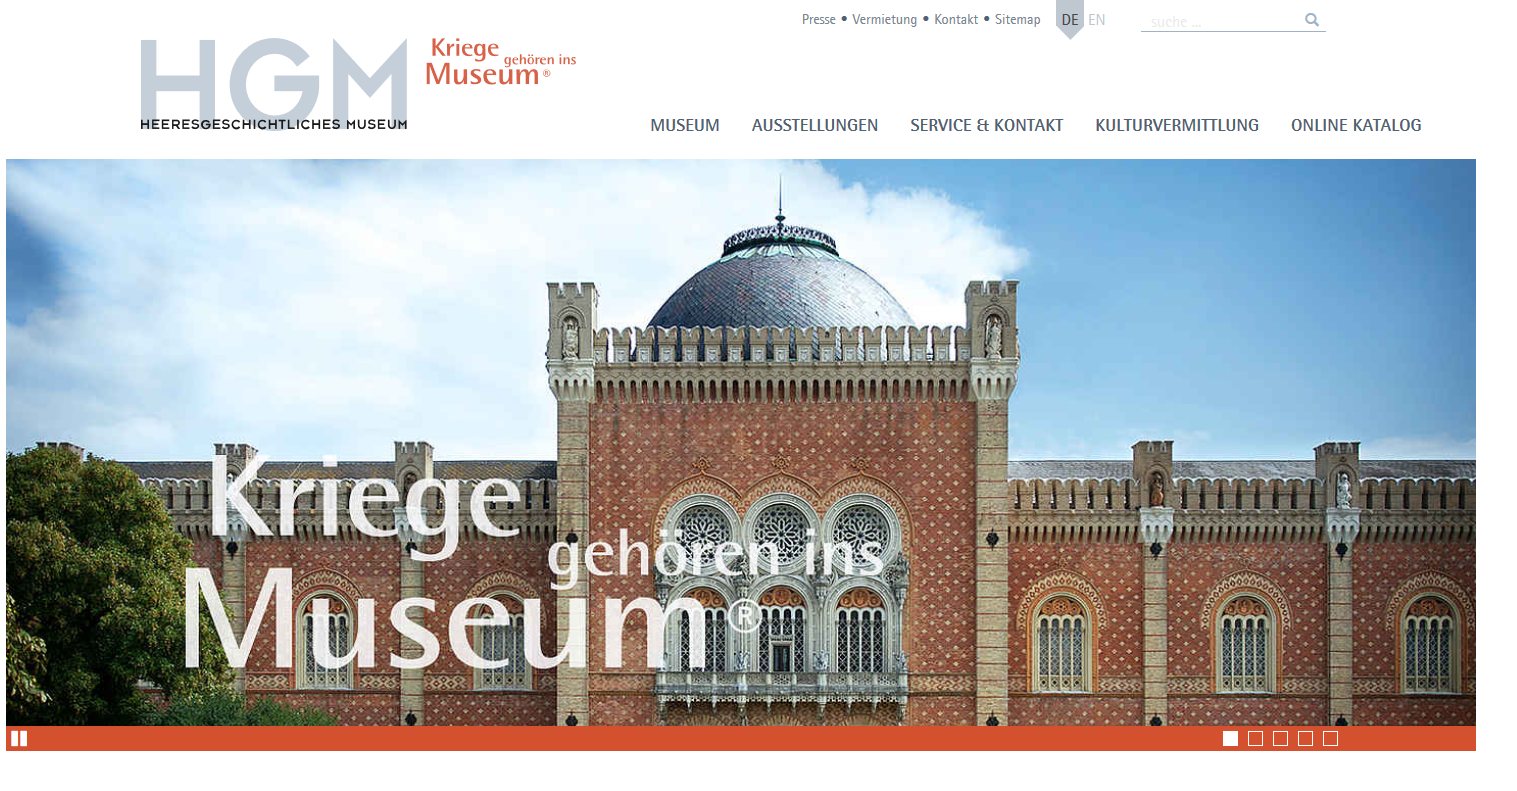 HGM-Webauftritt: "Kriege gehören ins Museum"